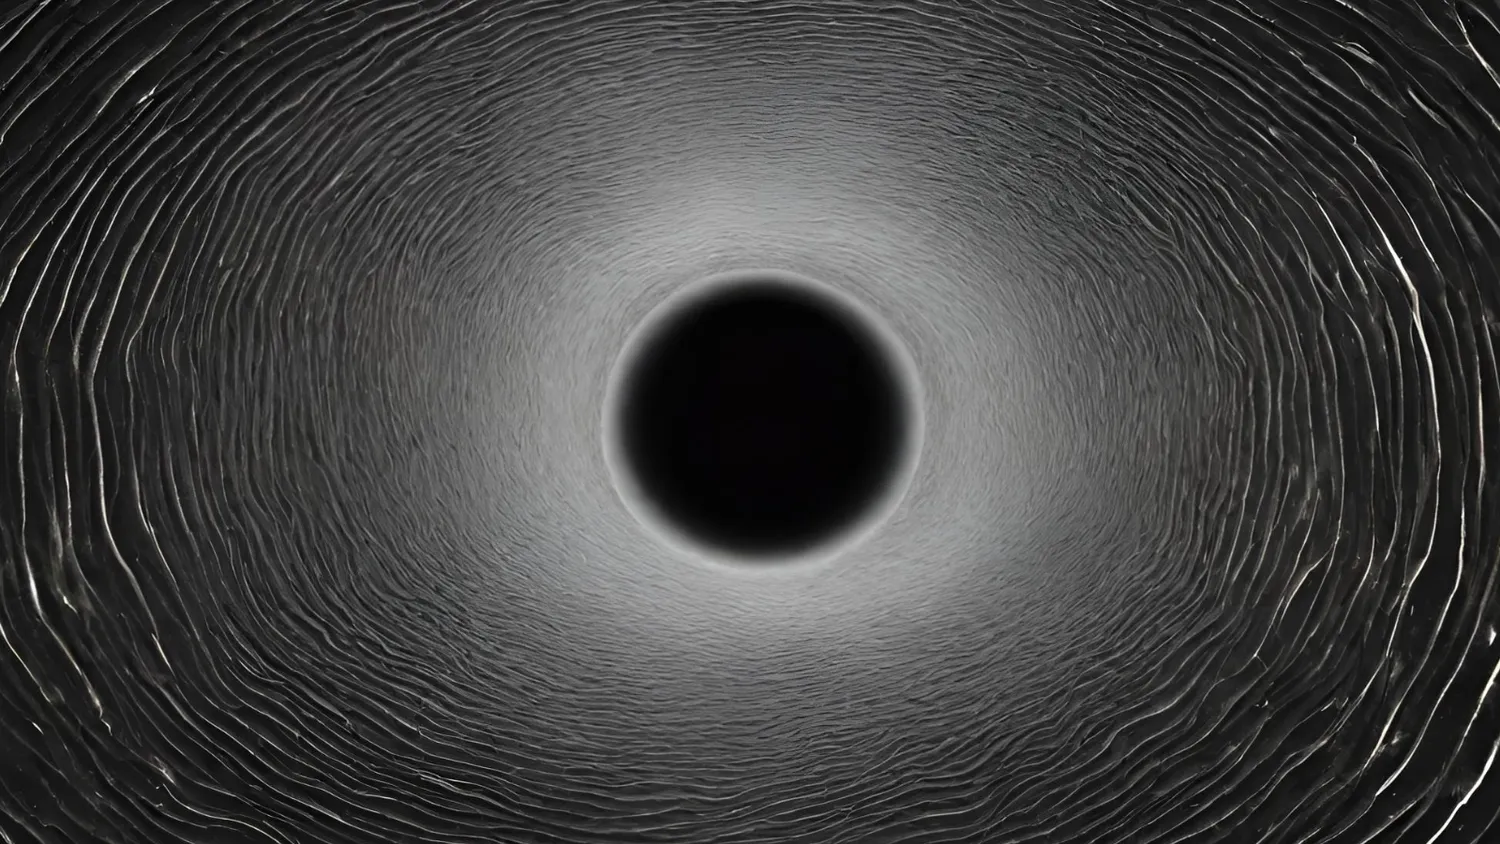 Ein schwarzer Kreis in der Mitte der Szene strahlt kreisförmige Wellen aus, die sich zu den Rändern des Bildes hin ausbreiten.